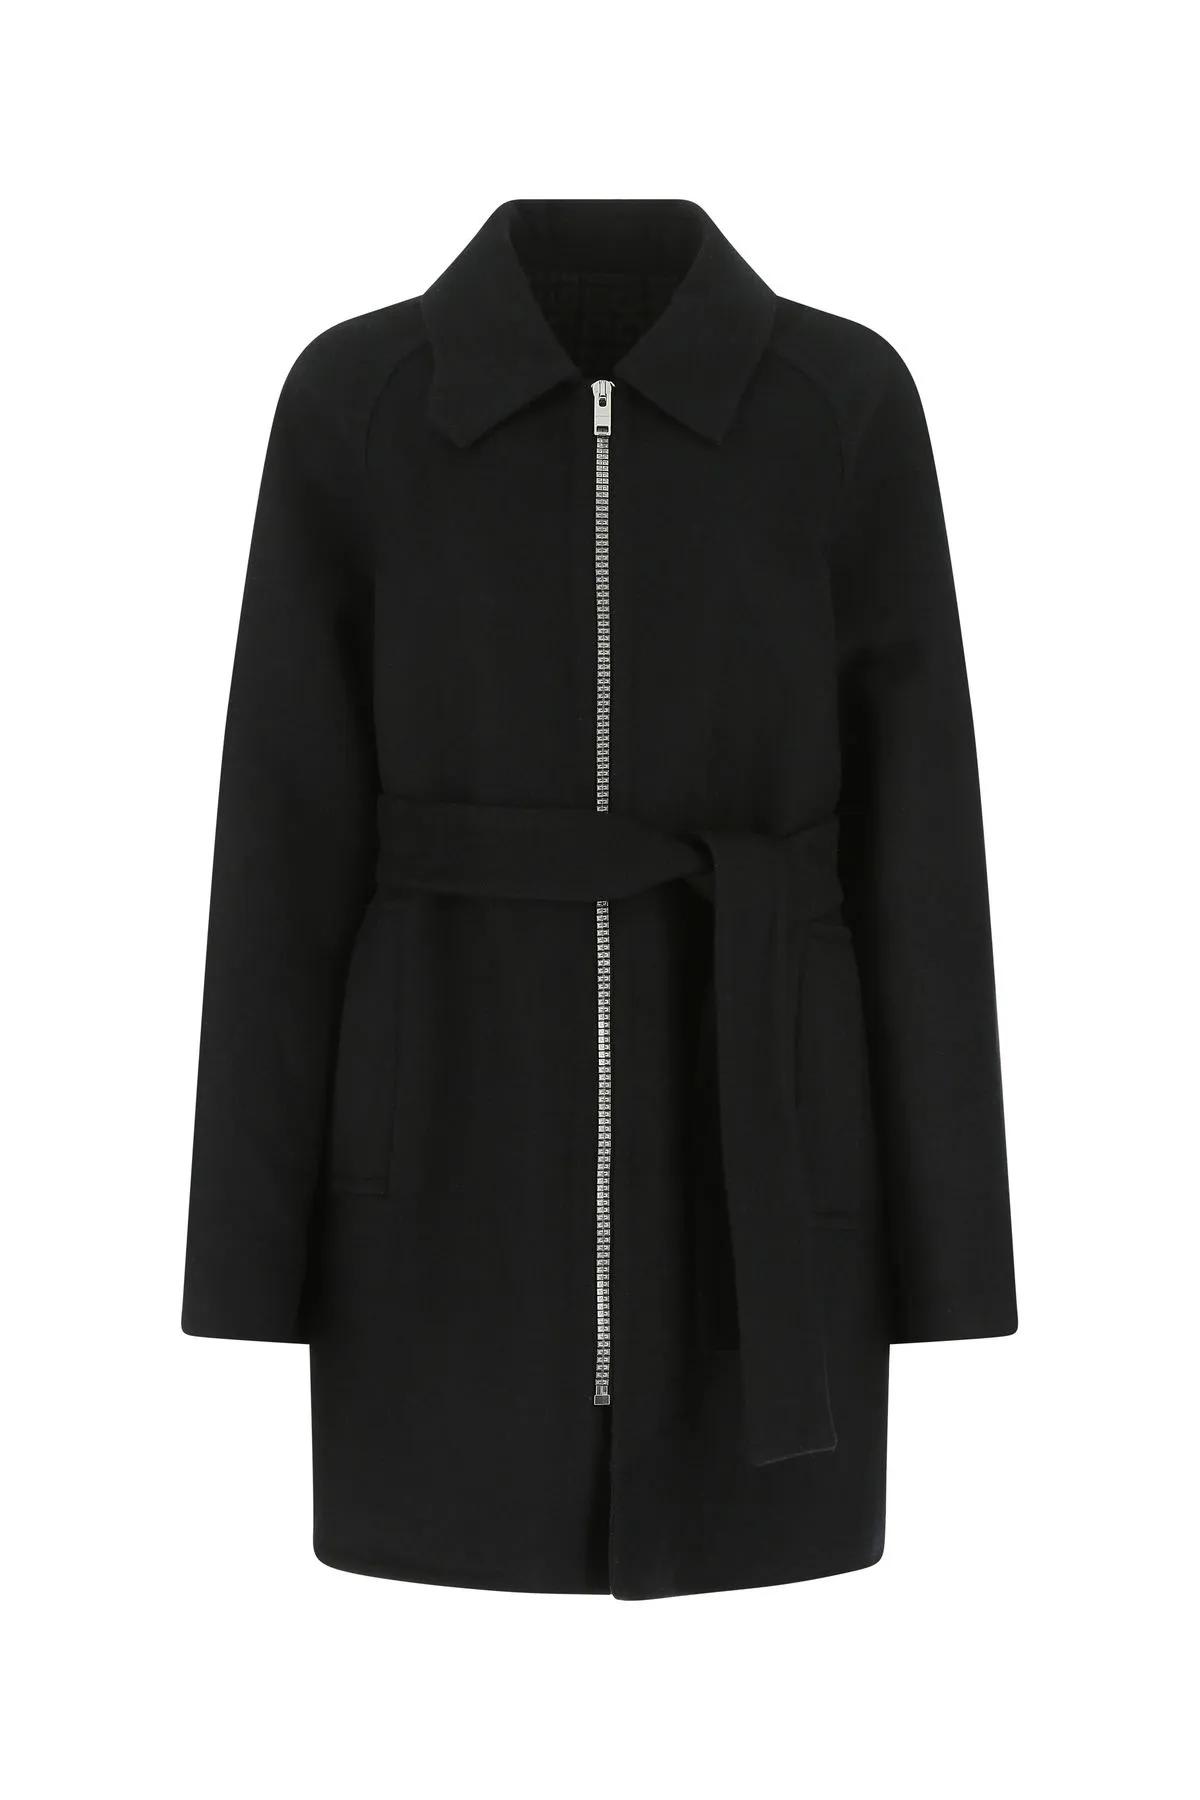 Shop Givenchy Black Wool Blend Coat